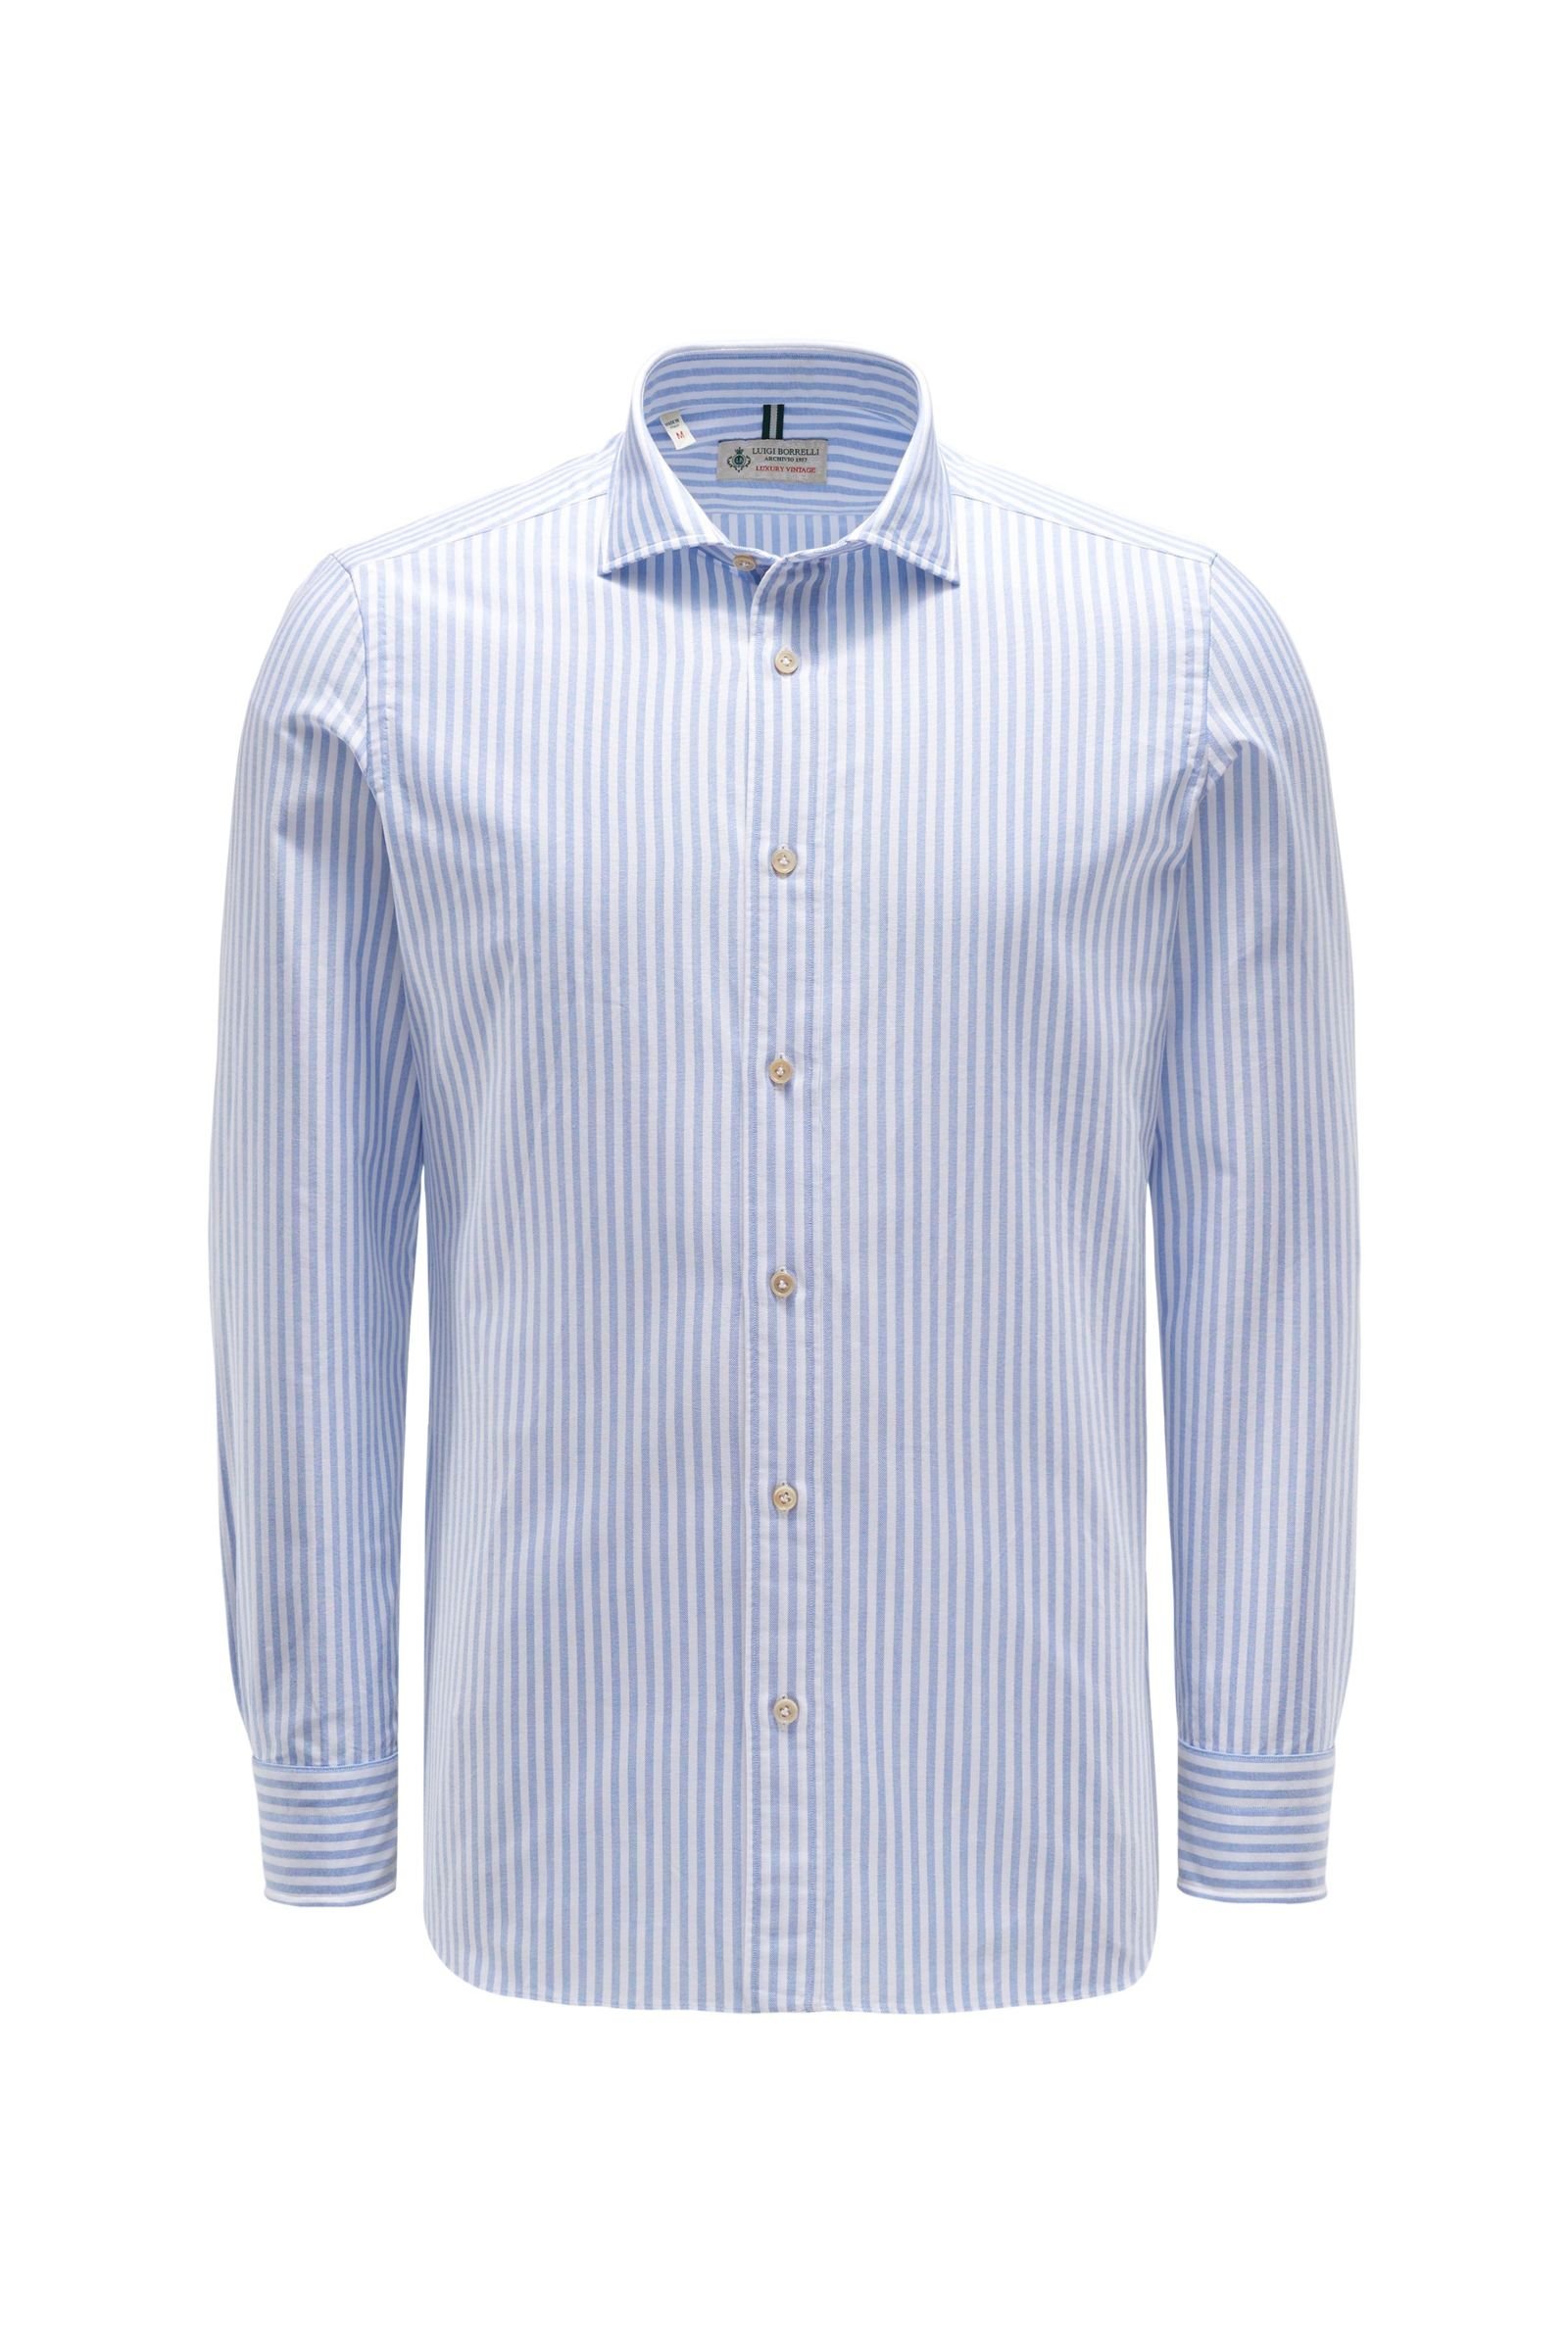 Oxfordhemd schmaler Kragen hellblau/weiß gestreift